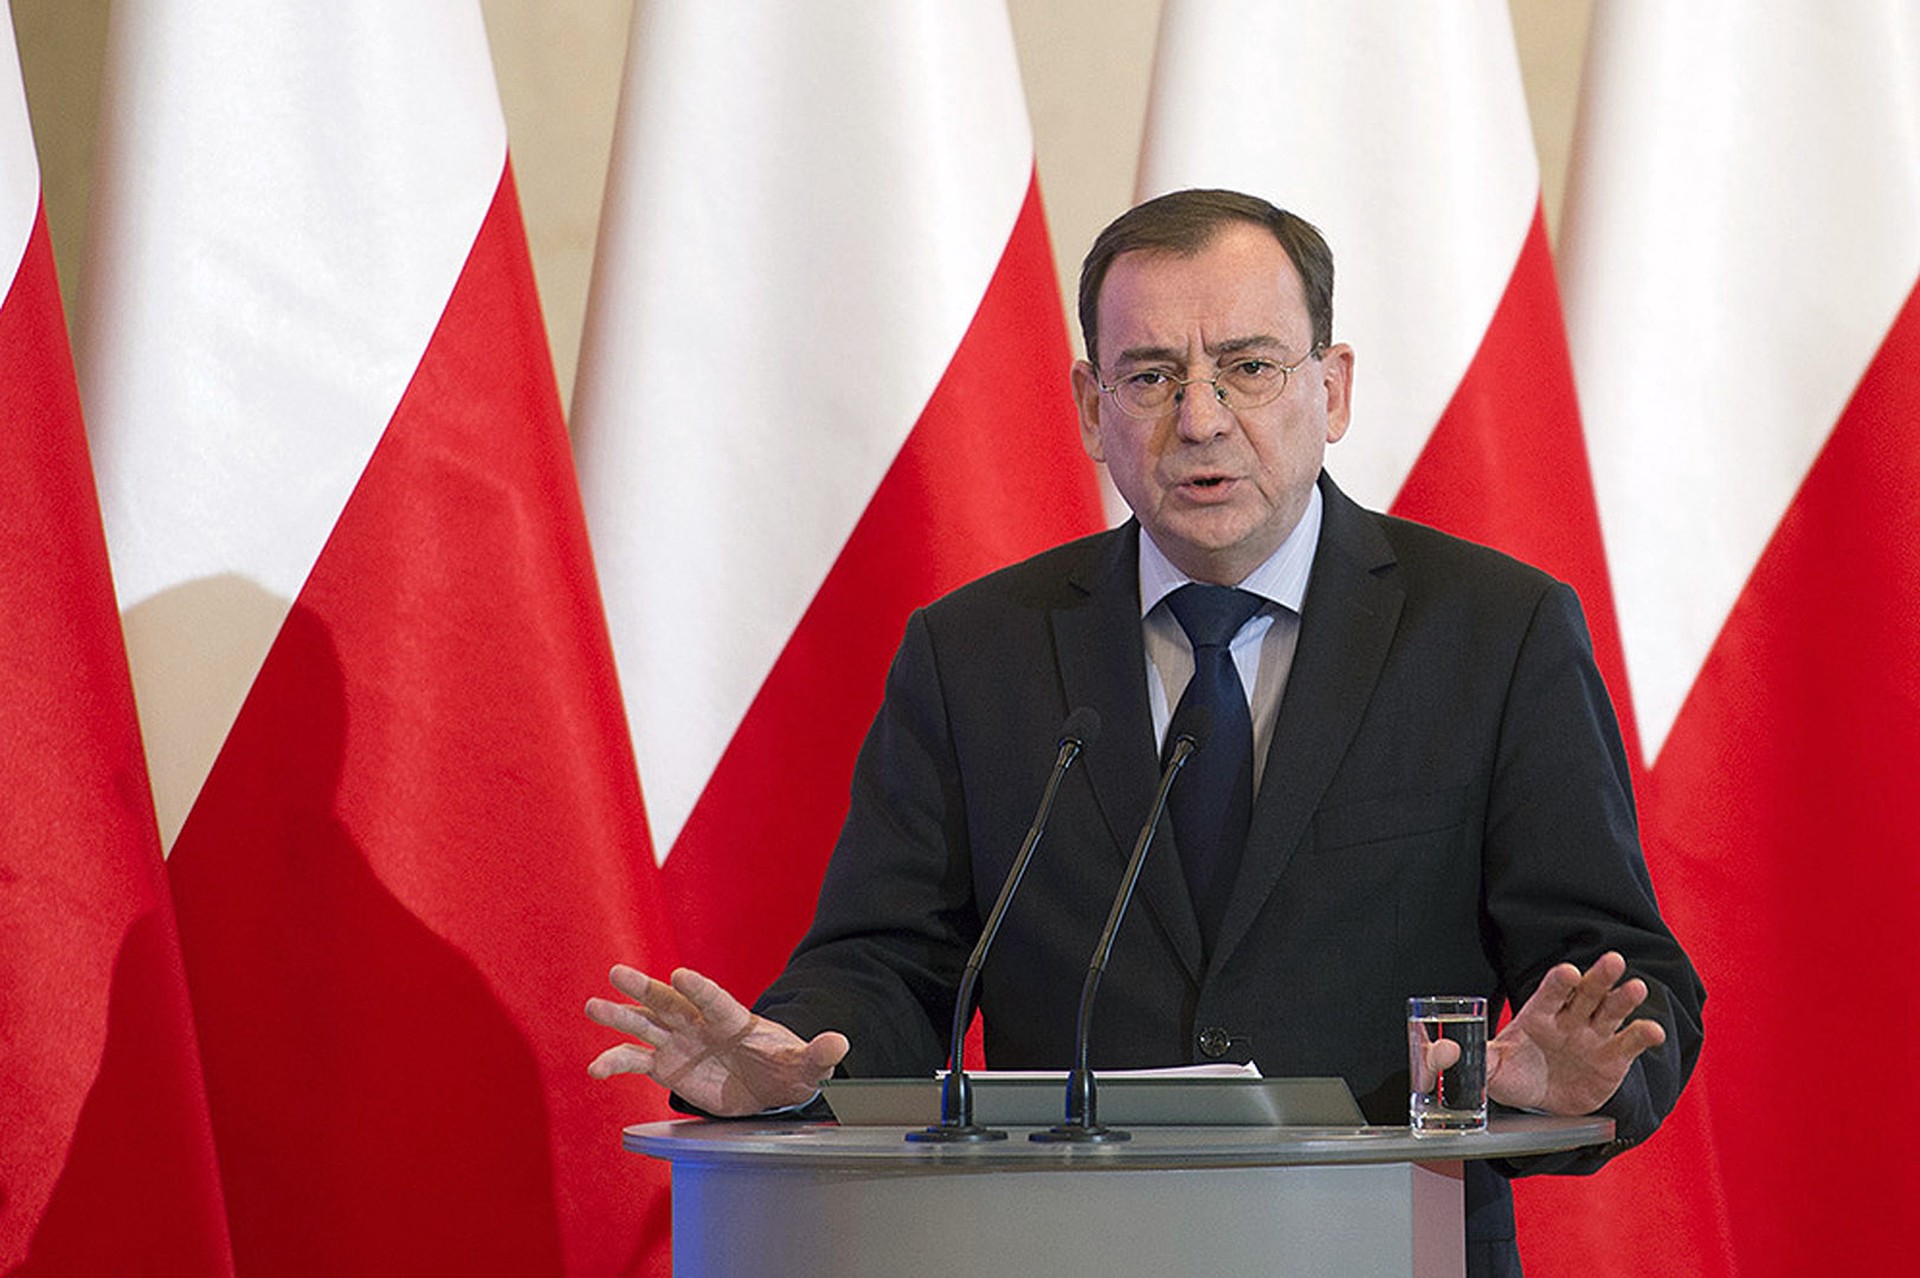 Показательный премьер: почему разгорающийся в Польше кризис будет выгоден России